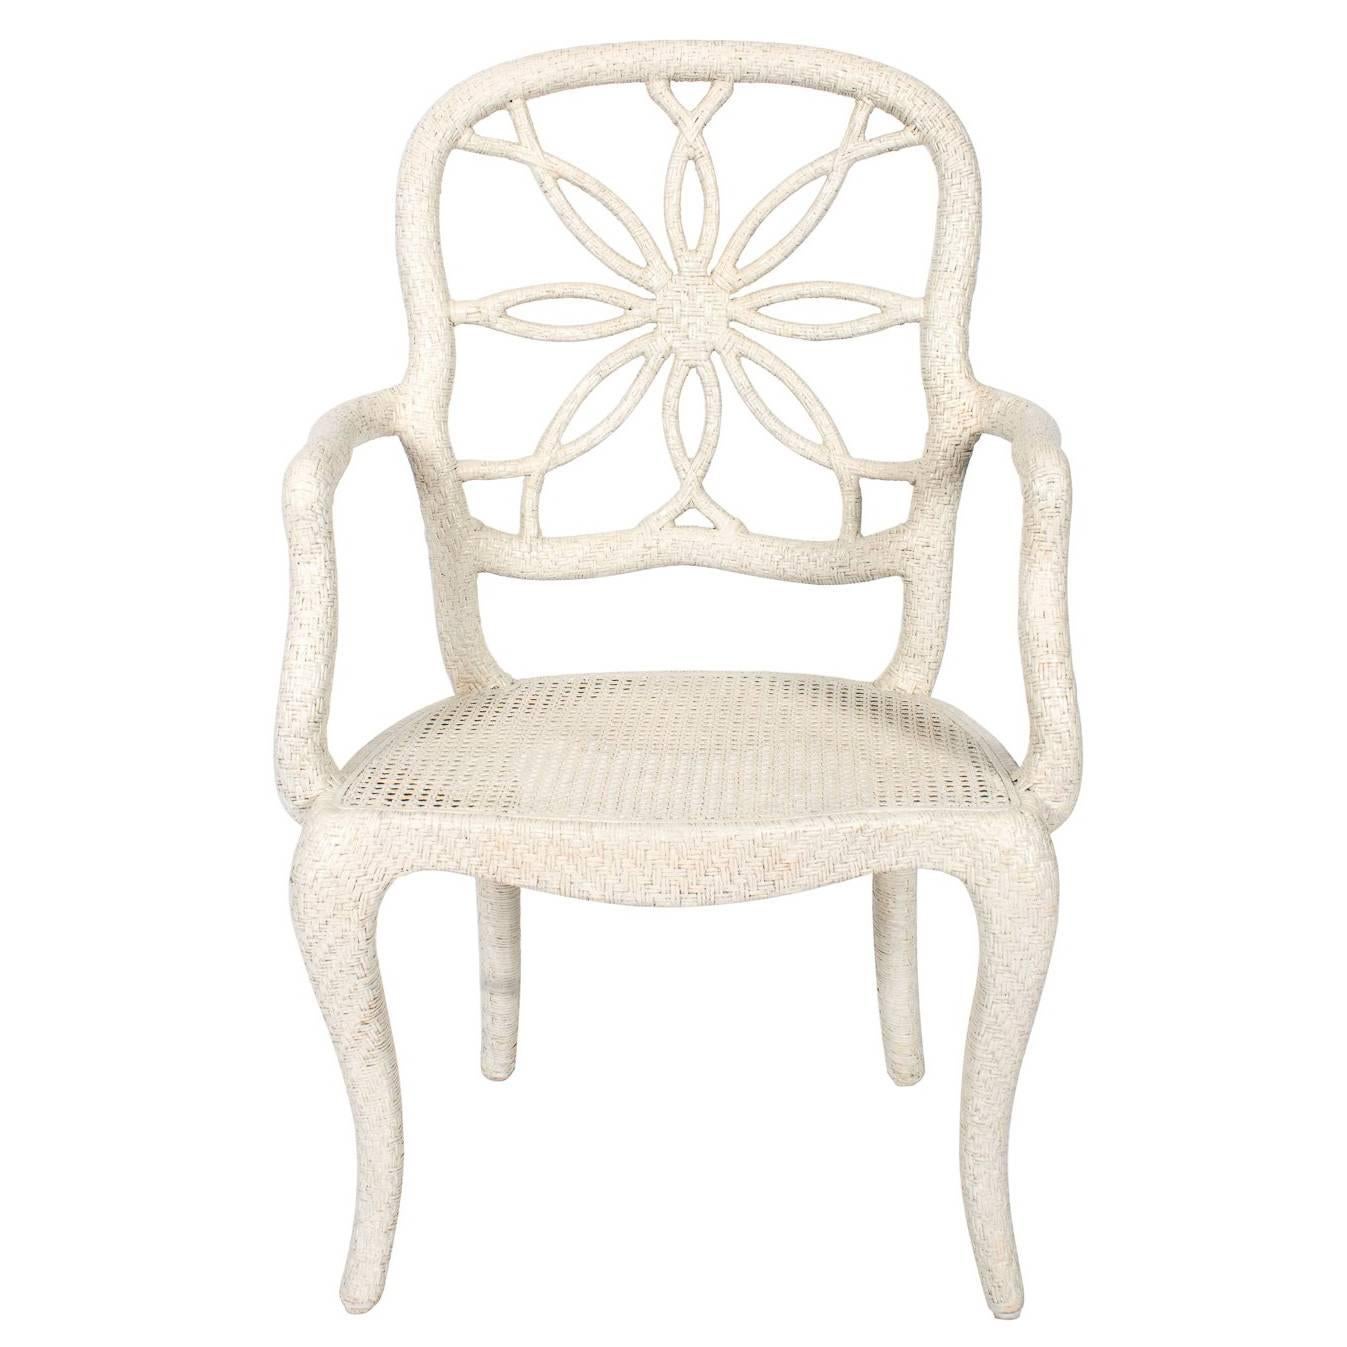 Wicker Sunburst Chair